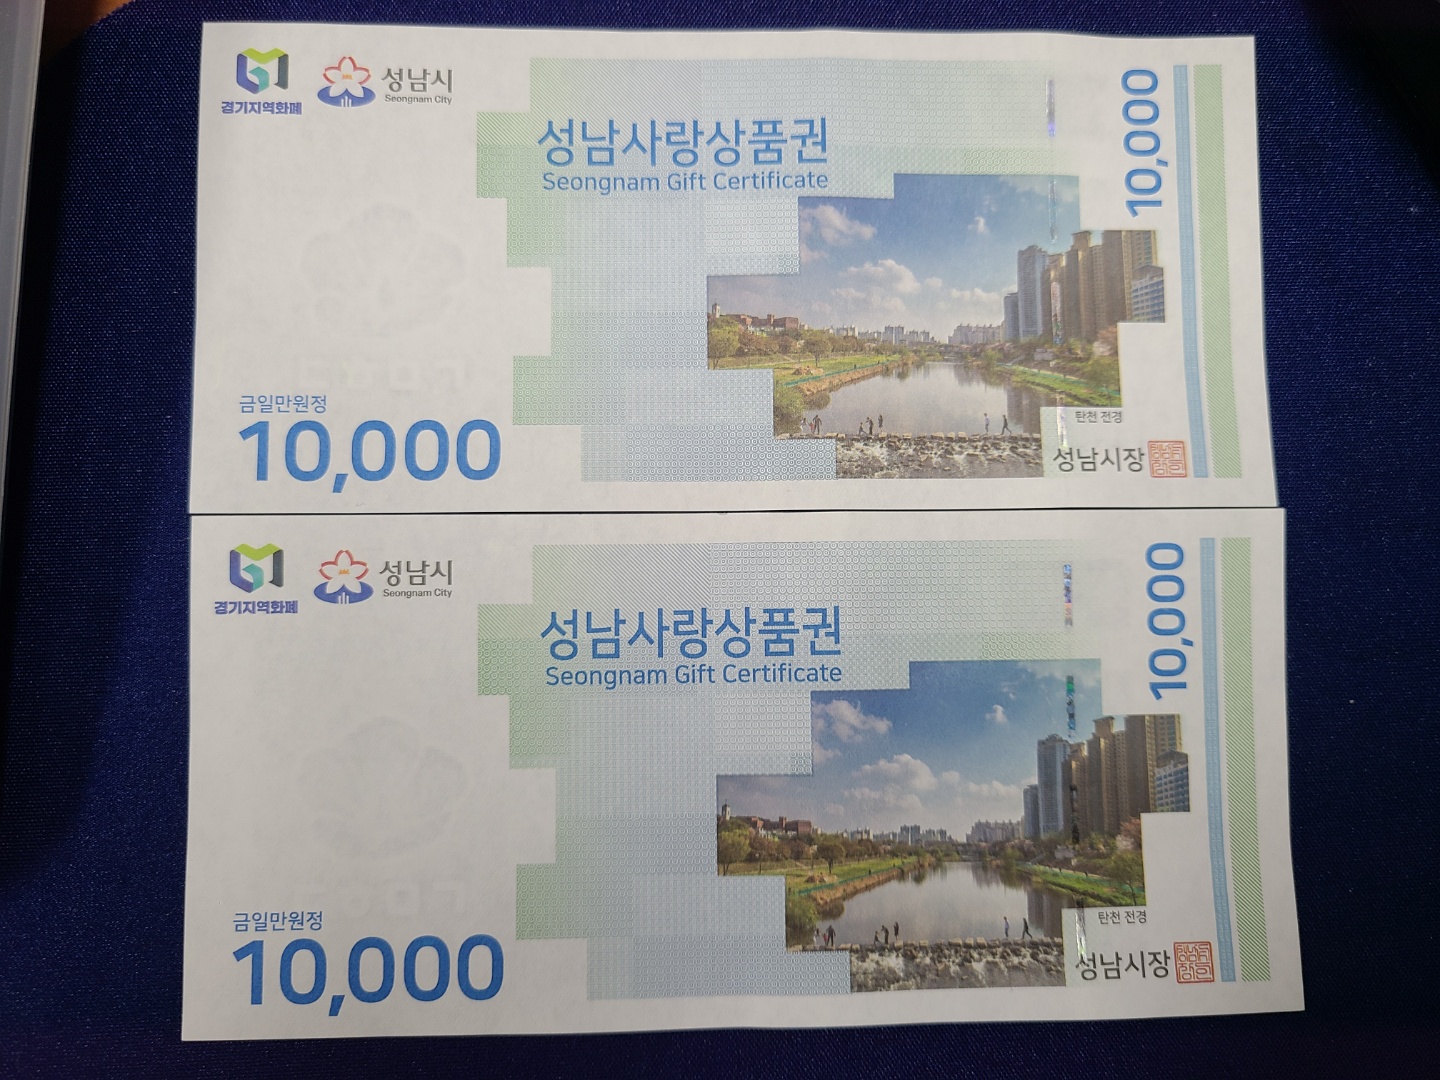 정동수 후원회원님께서 성남사랑상품권 2만원을 후원해주셨습니다!